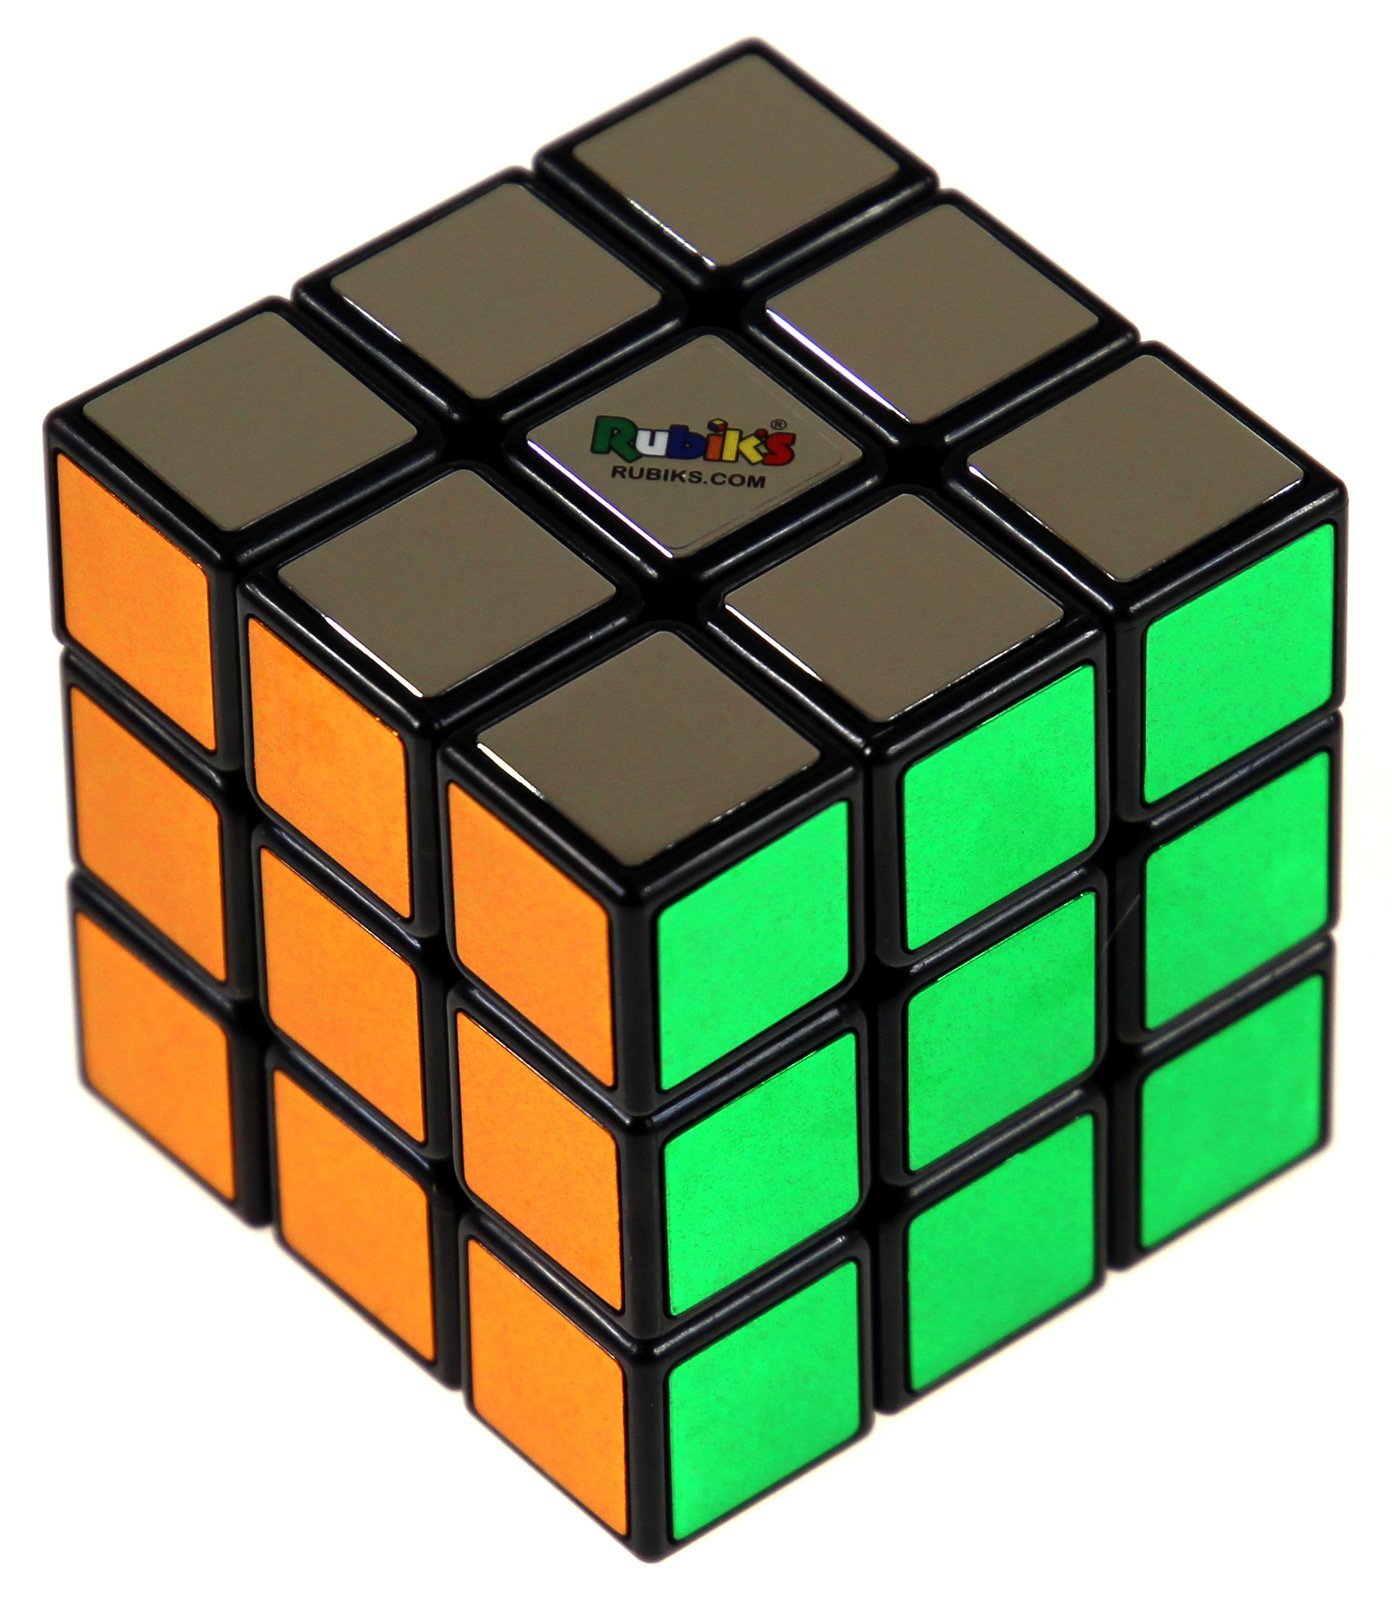 Algorytmy Do Ukladania Kostki Rubika 3x3x3 Kostka Rubika 3x3x3 Metallic | SPRZEDAŻ HURTOWA \ Rubik's | G3 Poland